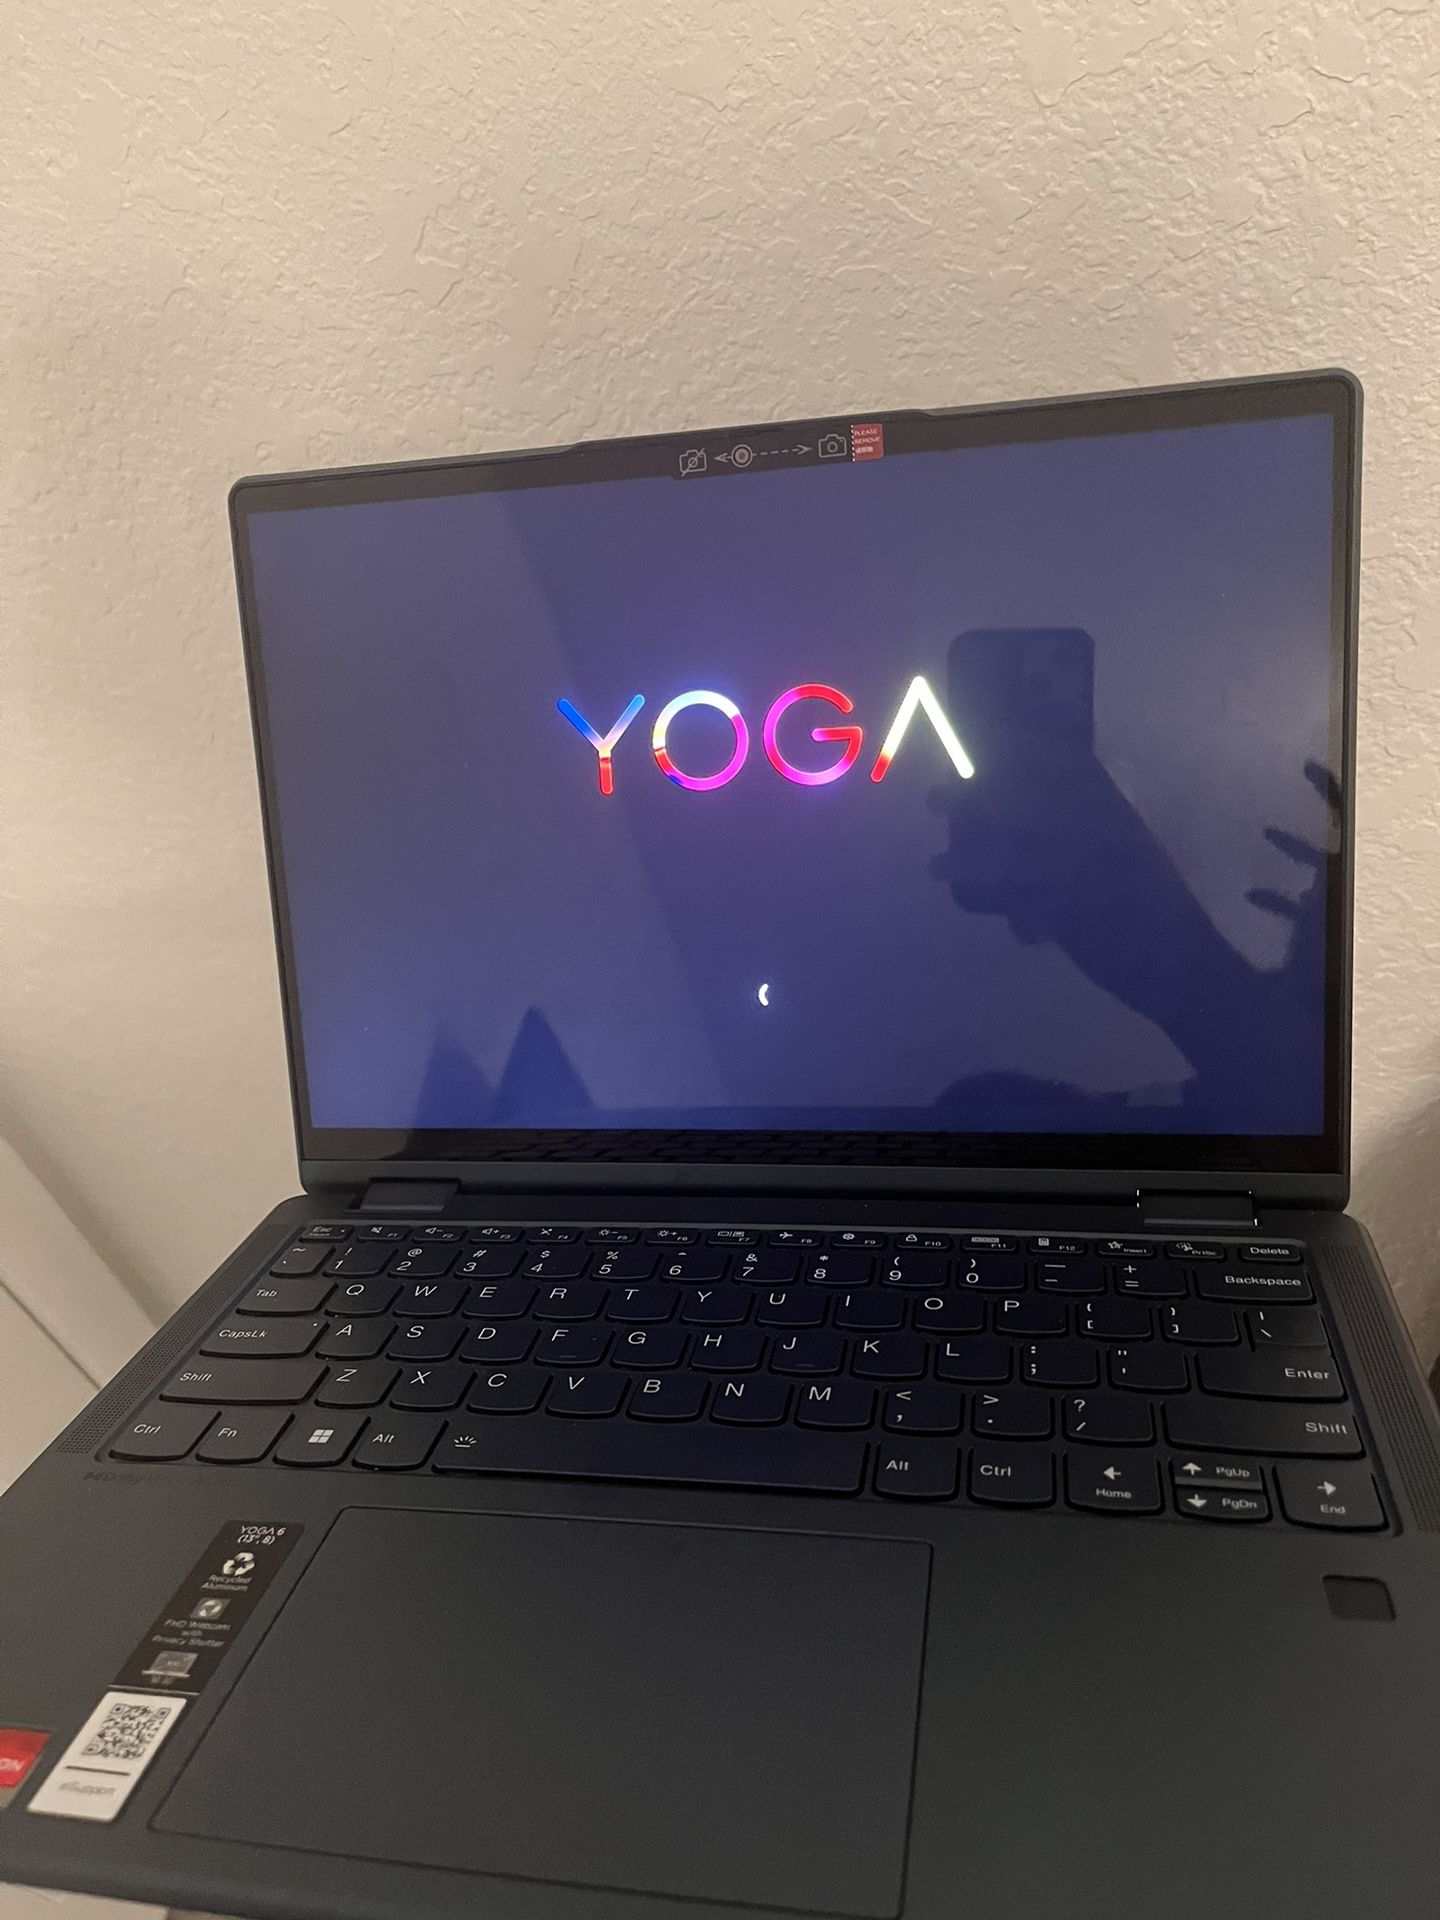 Yoga 6 (13” AMD) 2 in 1 Laptop